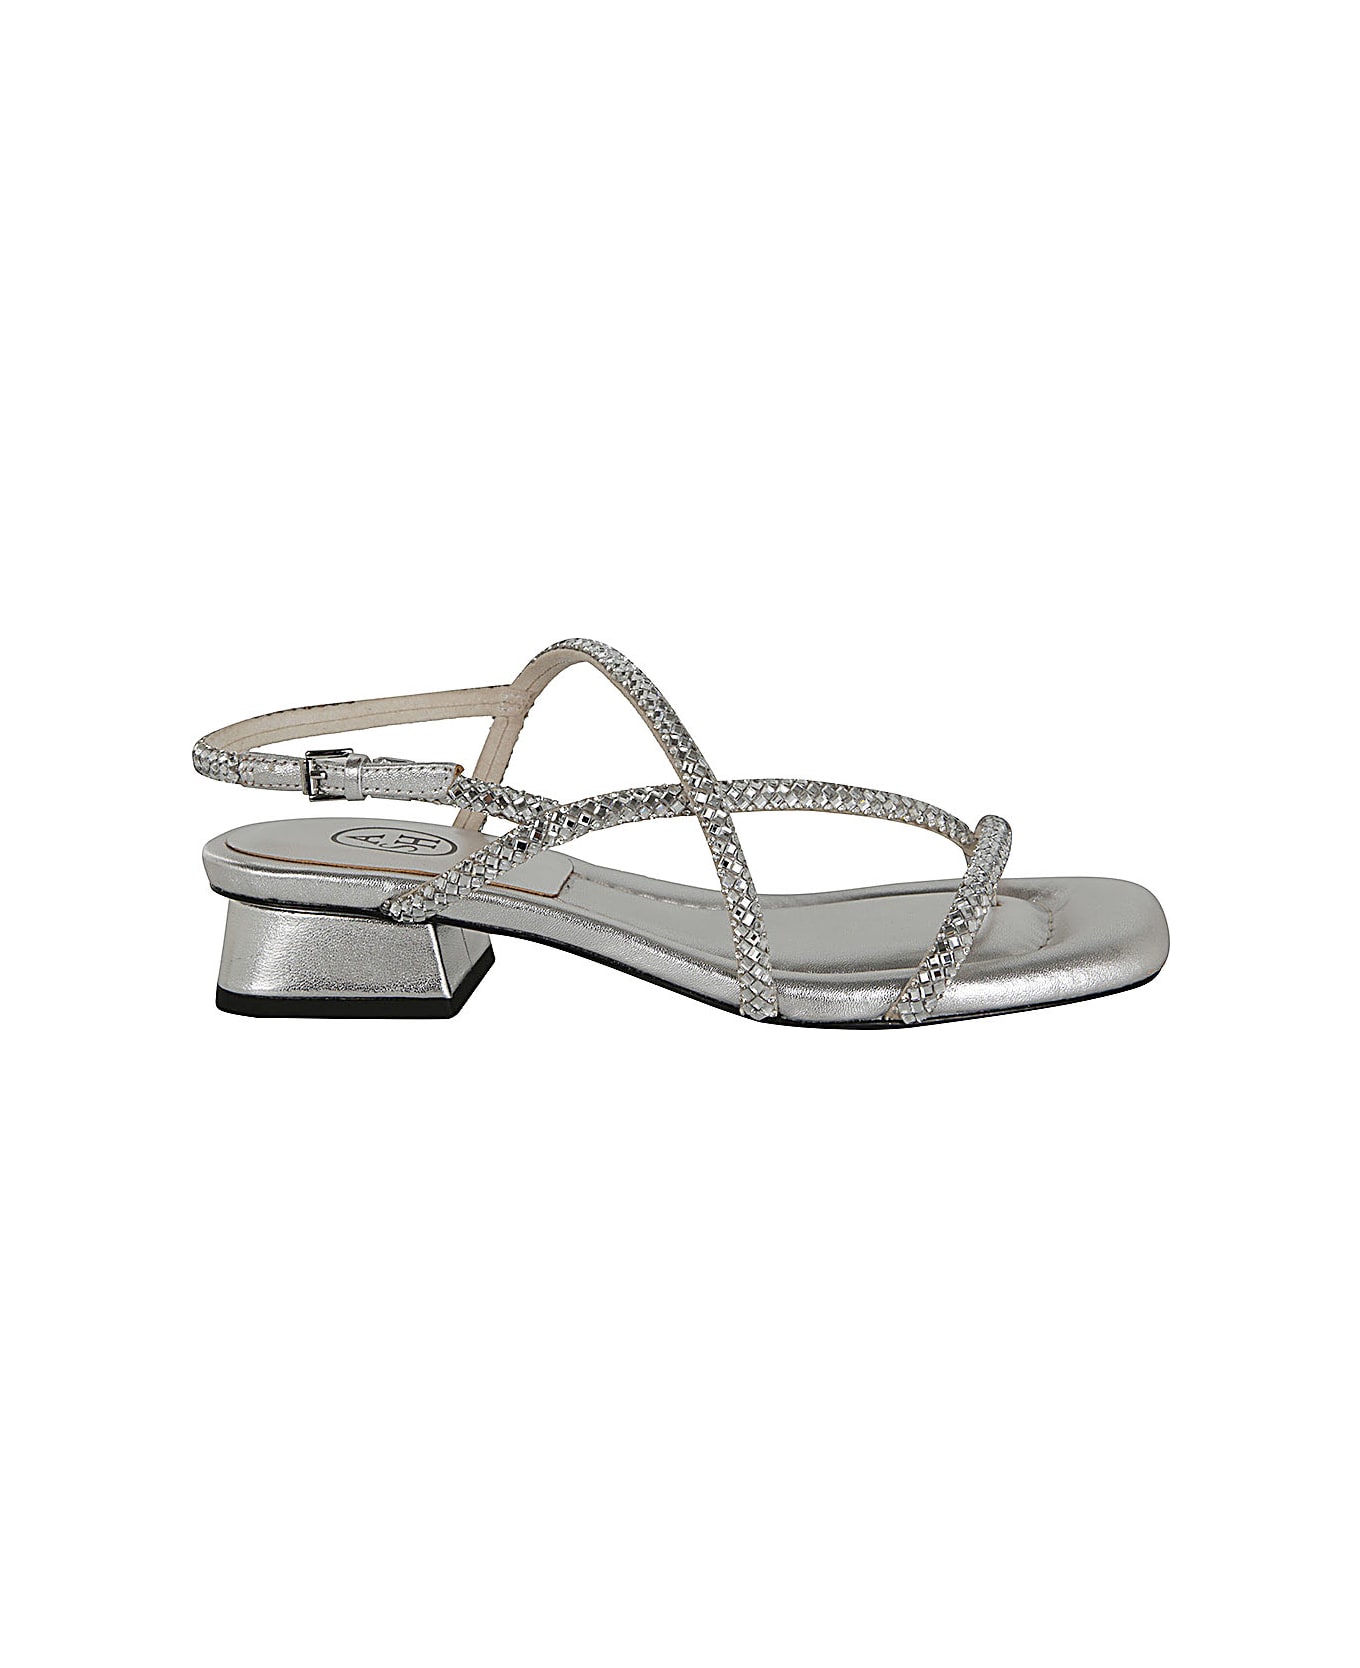 Ash Isla02 Sandals - Silver Talc サンダル